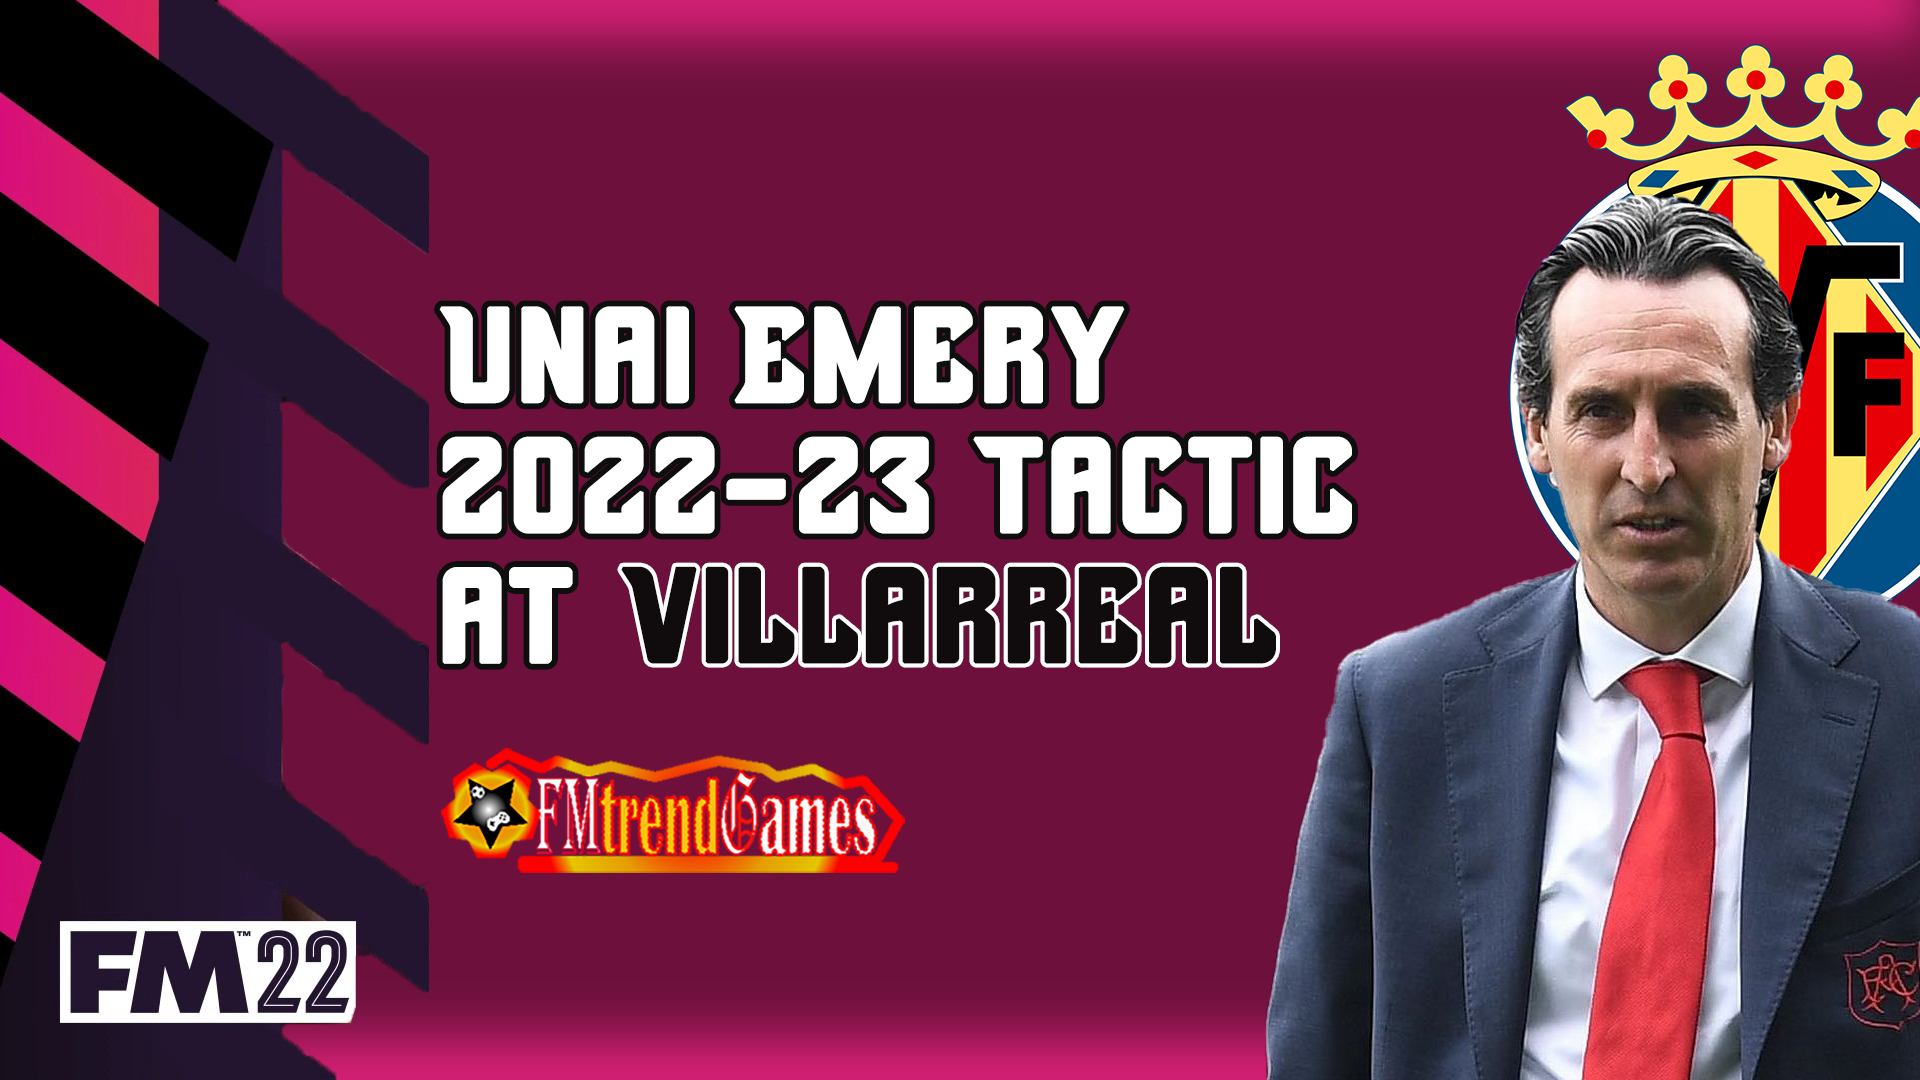 2022-23 Unai Emery 4-4-2 tactic